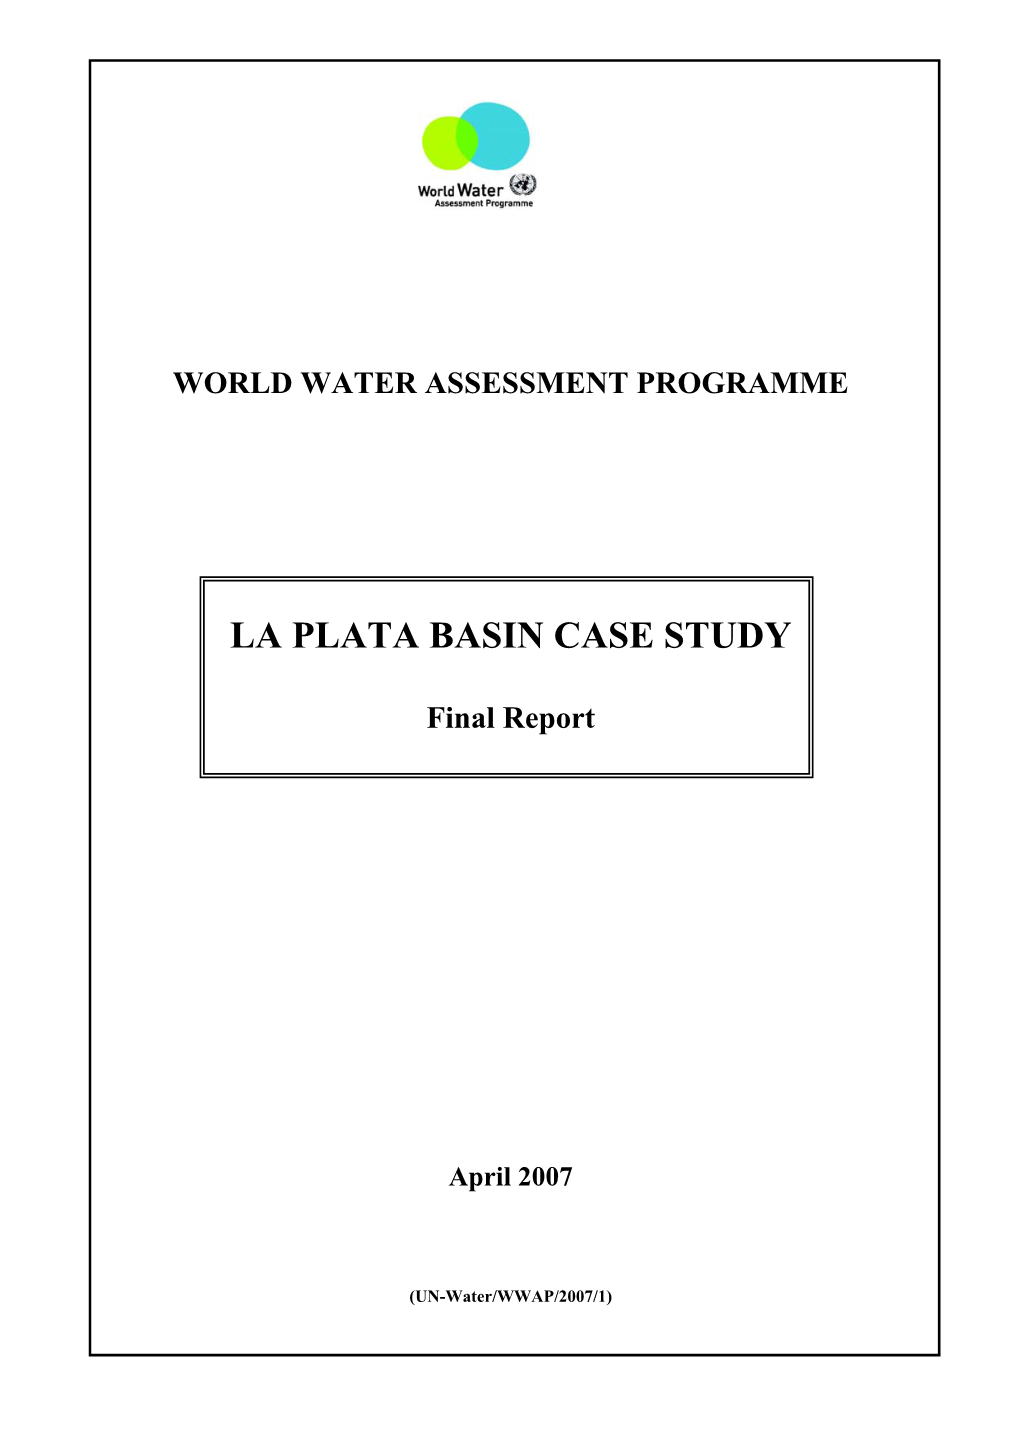 La Plata Basin Case Study